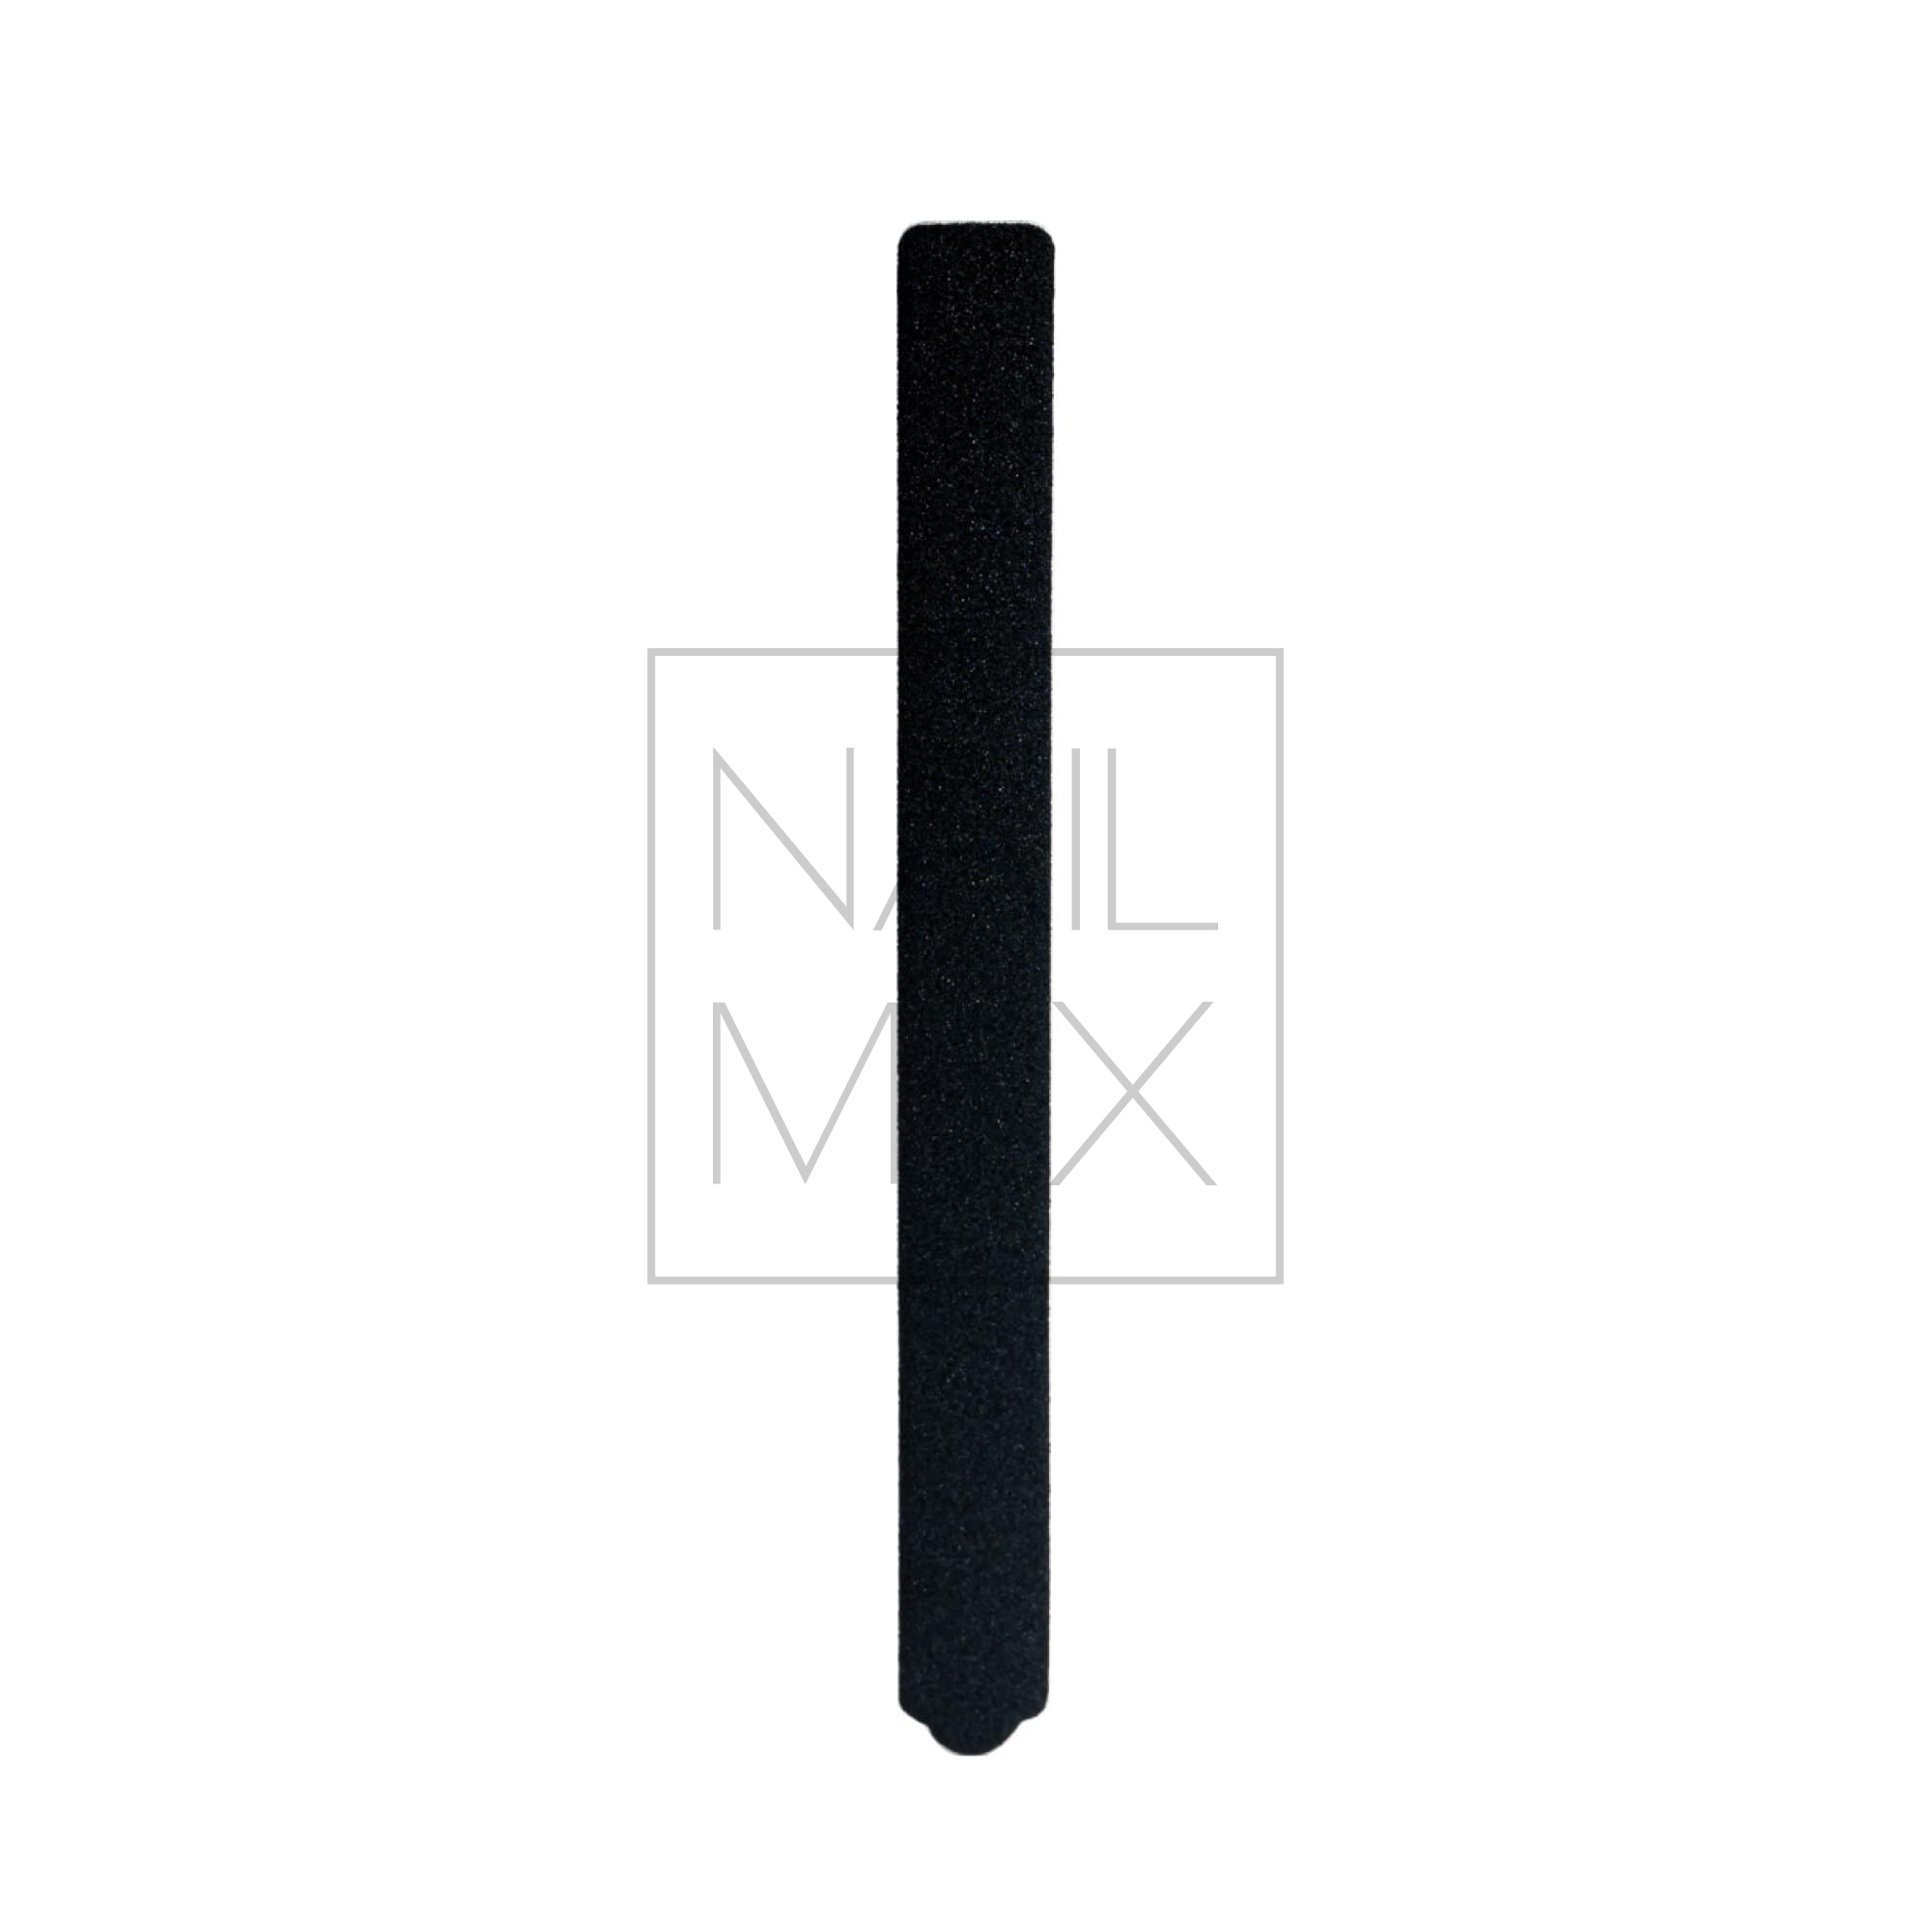 Kerman Náhradní brusný papír S – černý (14x135mm), 50 kusů